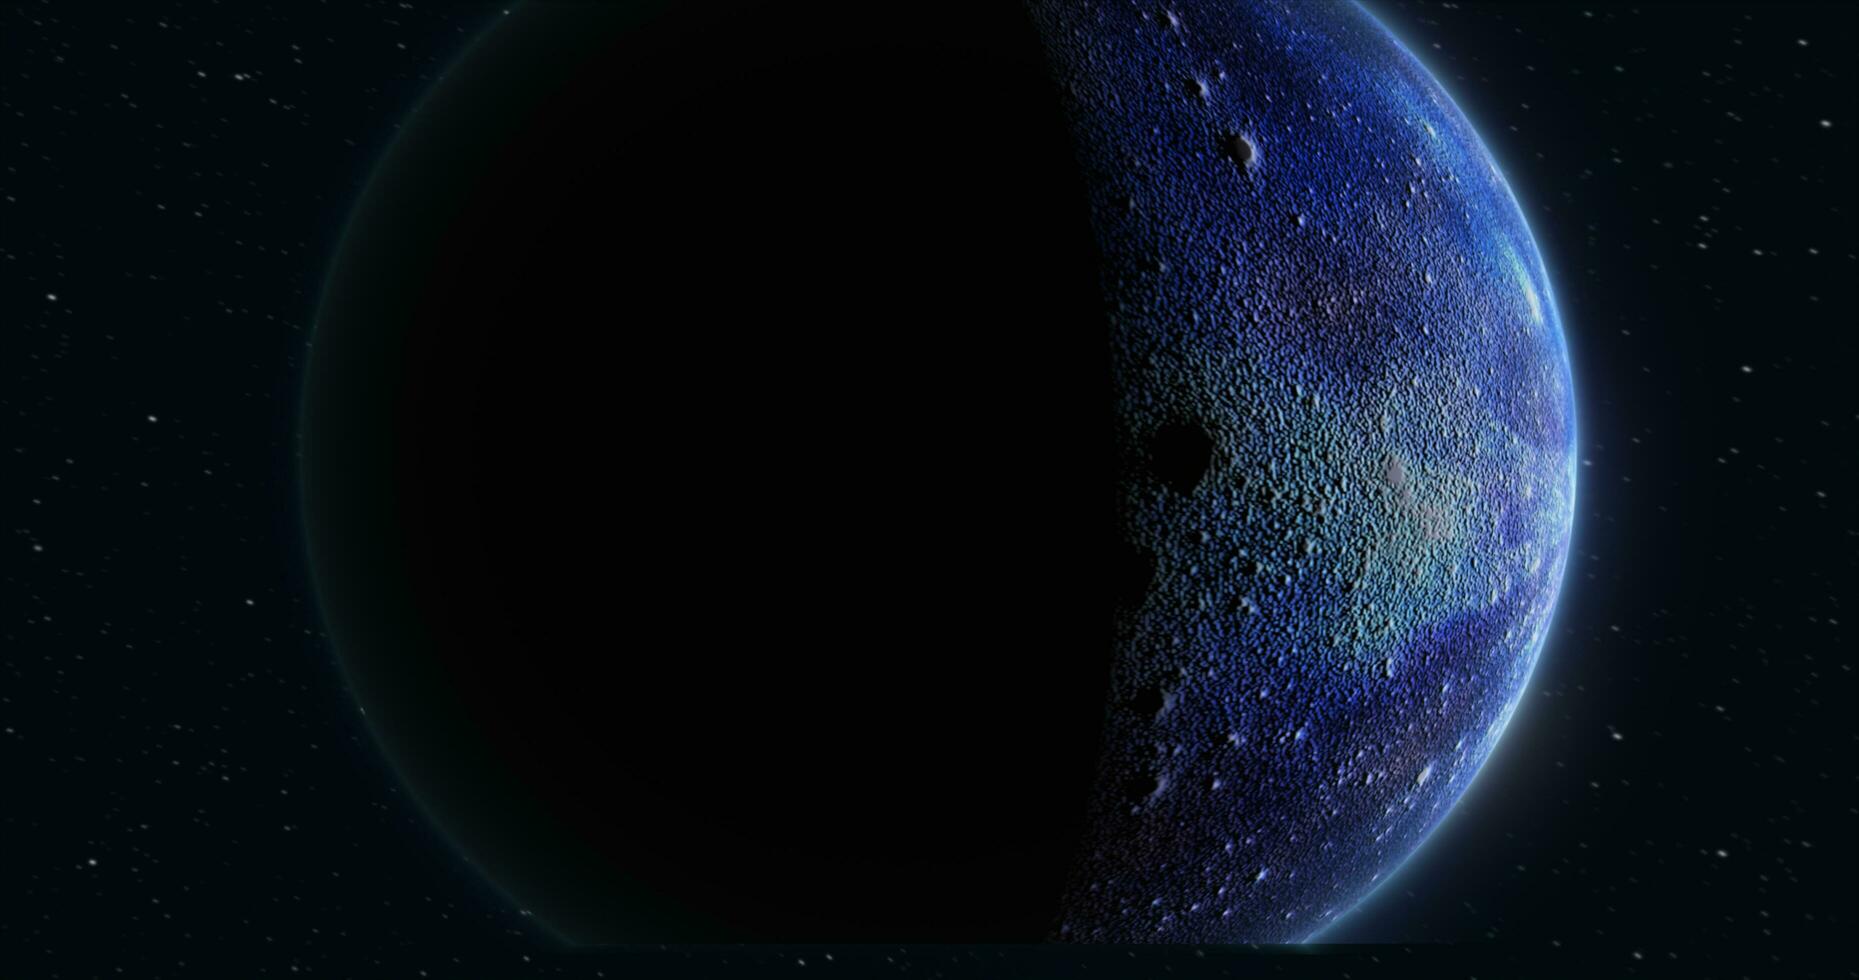 resumen realista espacio hilado planeta redondo esfera con un azul agua superficie en espacio en contra el antecedentes de estrellas foto